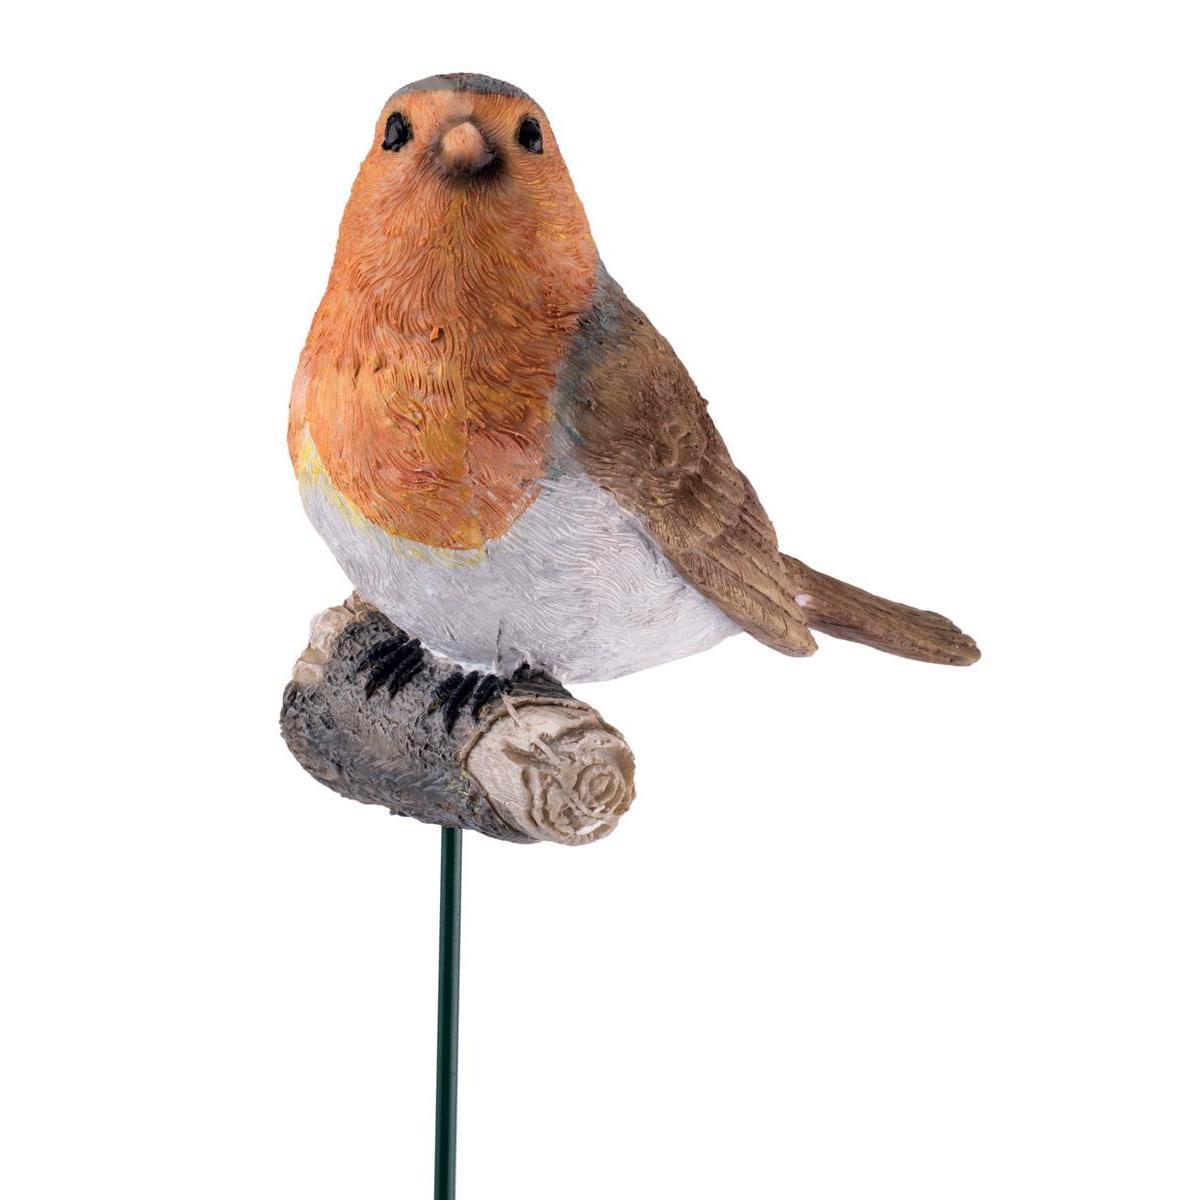 Oiseau décoratif - Polyrésine - 7 x 11 x H 54,5 cm - Orange et marron